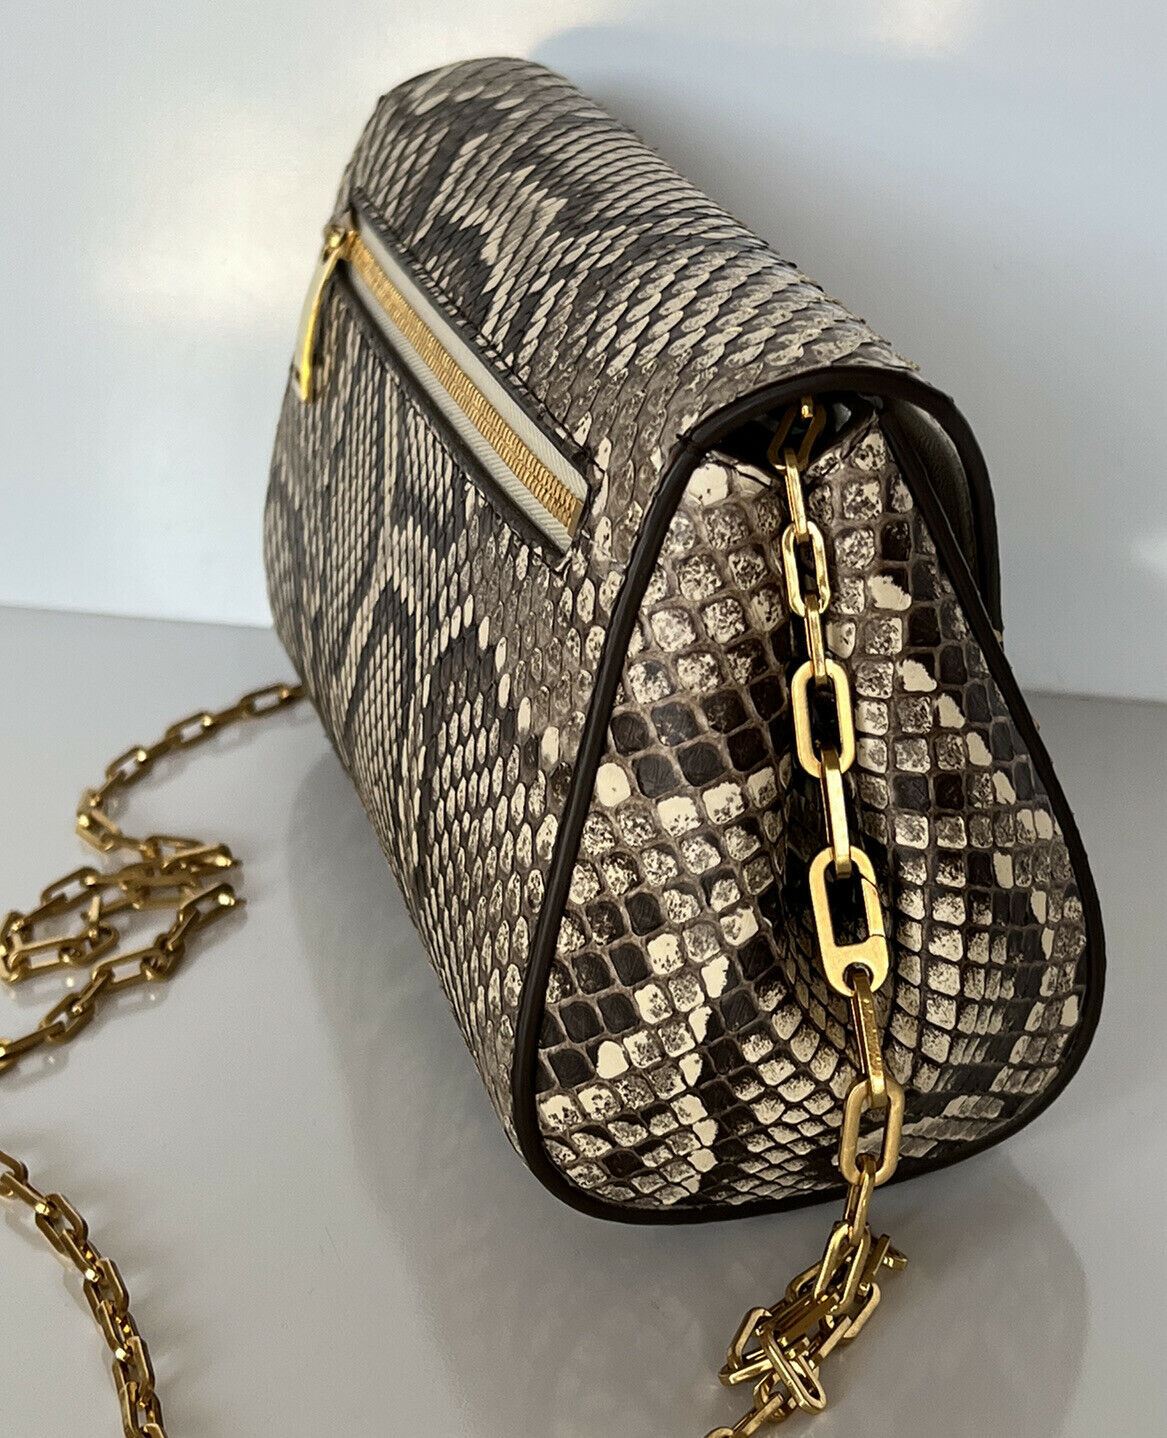 NWT $2550 Bottega Veneta Python Leather Chain Strap Mini Bag 608798 Italy